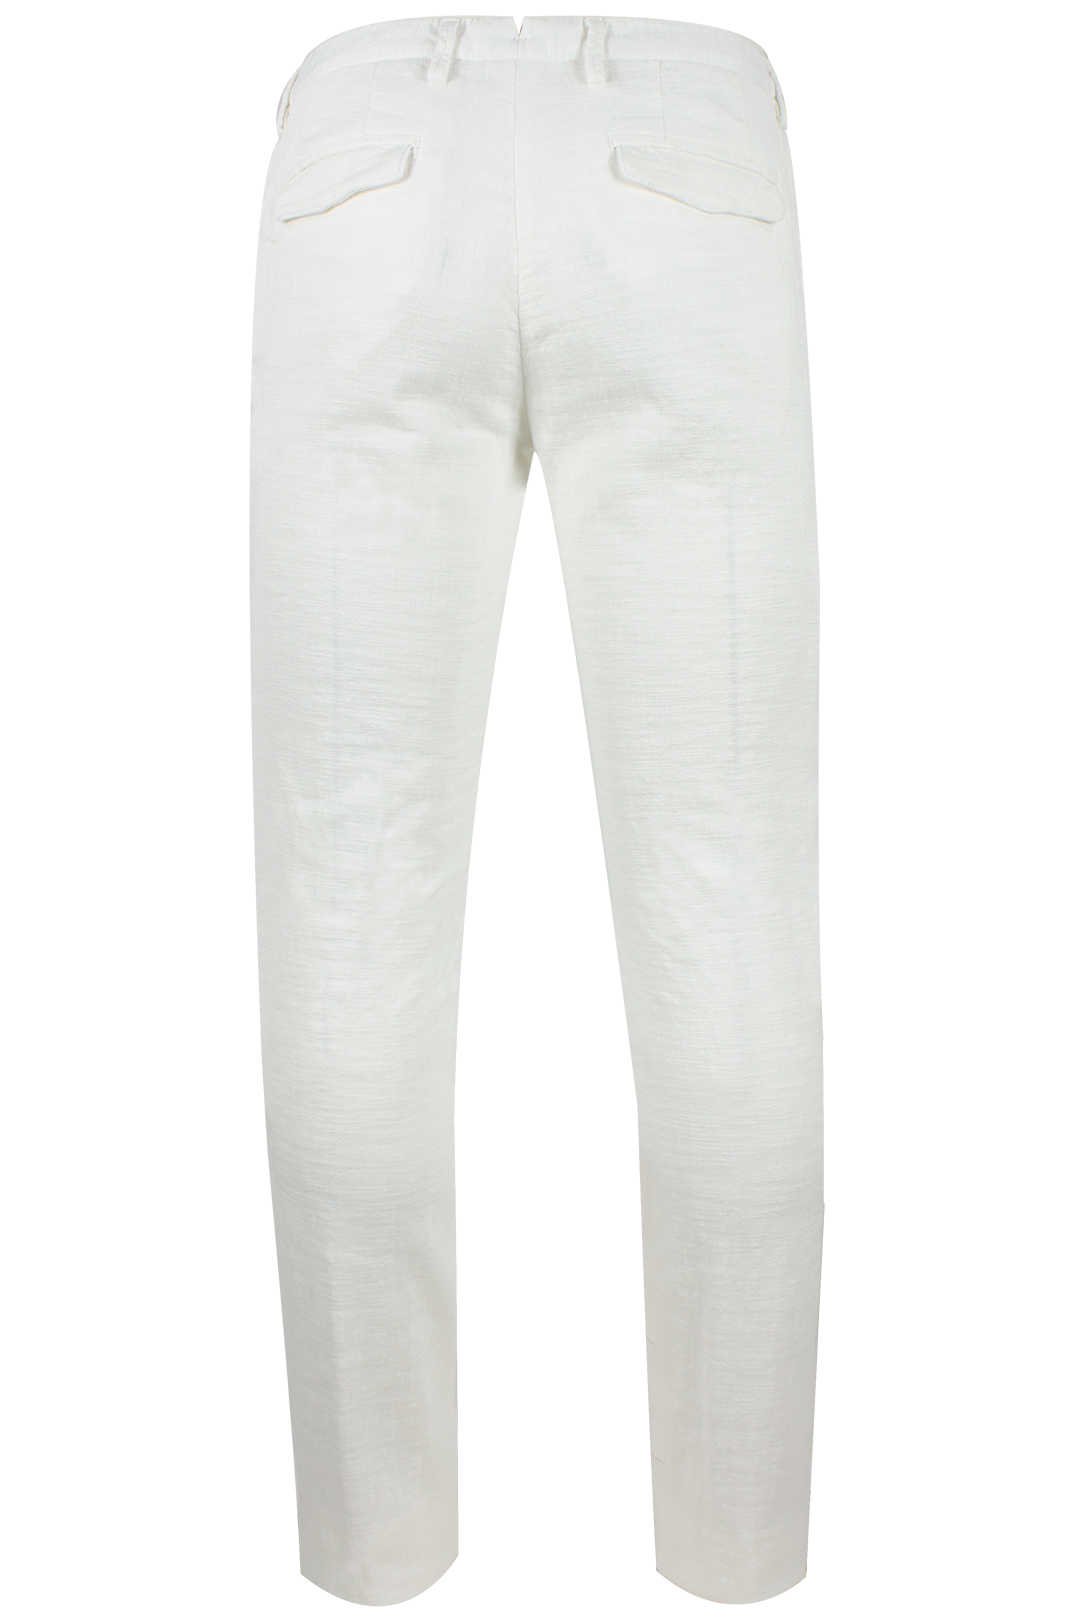 Pantalone pince cotone tinto capo bianco retro